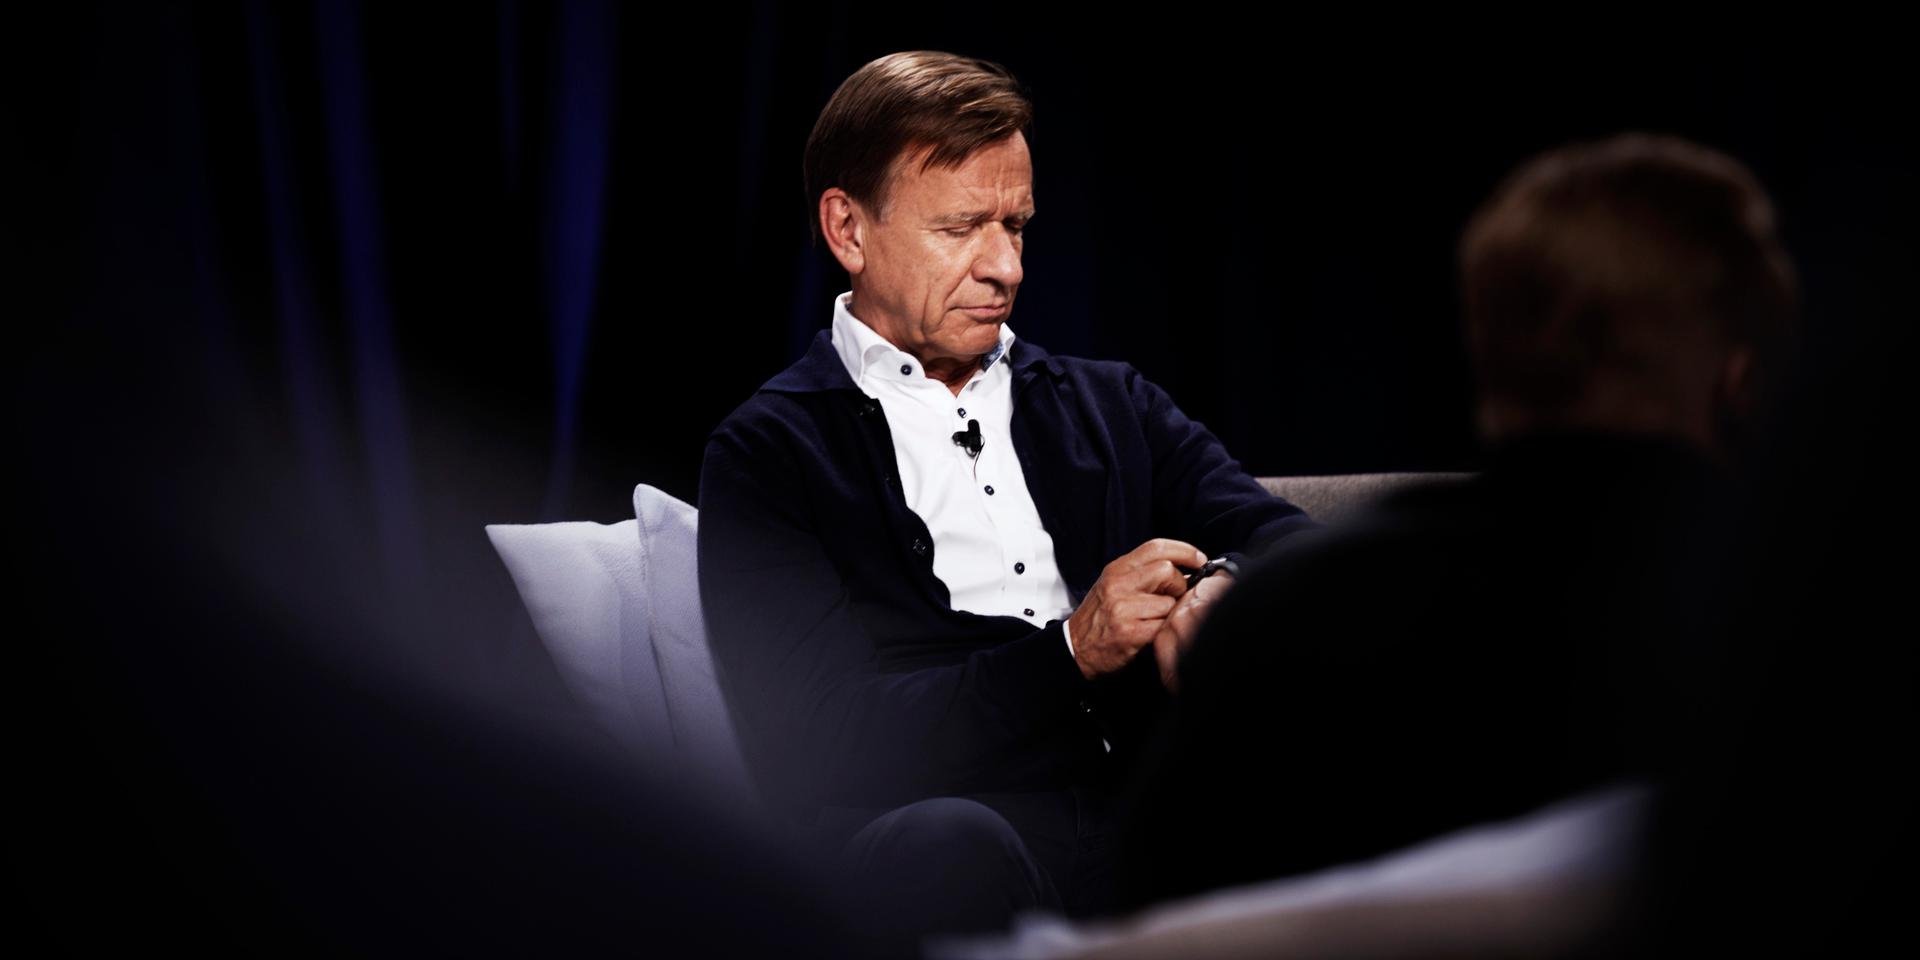 Håkan Samuelsson, vd i Volvo Cars, uppger att intresset från investerare varit stort inför bolagets börsnotering.